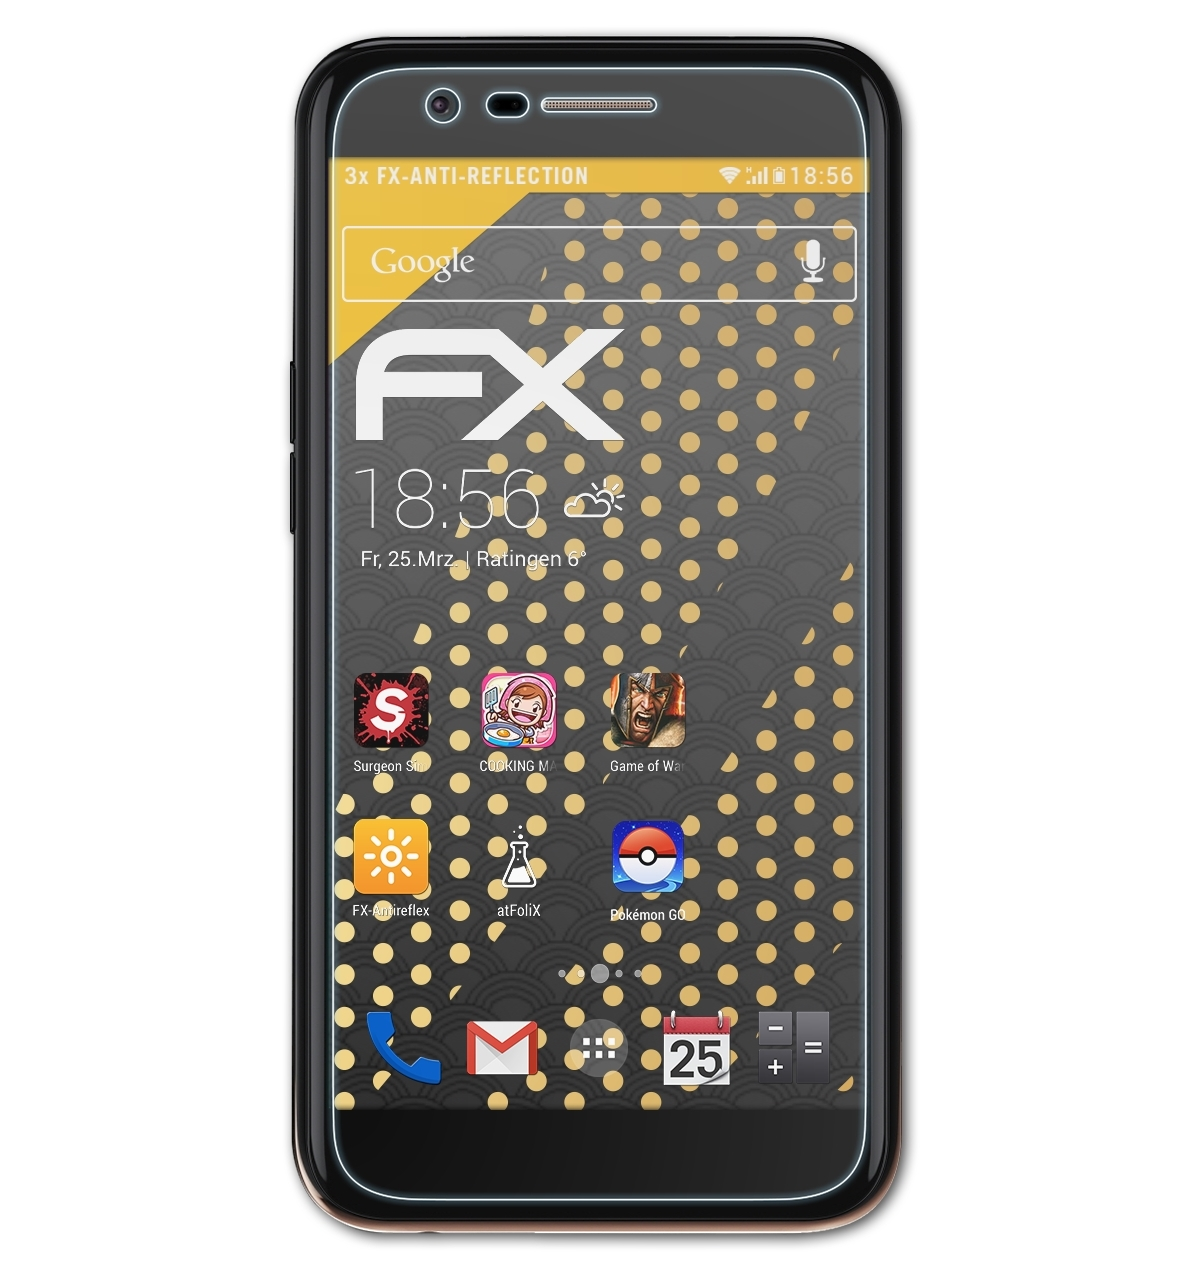 K10 Displayschutz(für 3x LG (2017)) ATFOLIX FX-Antireflex